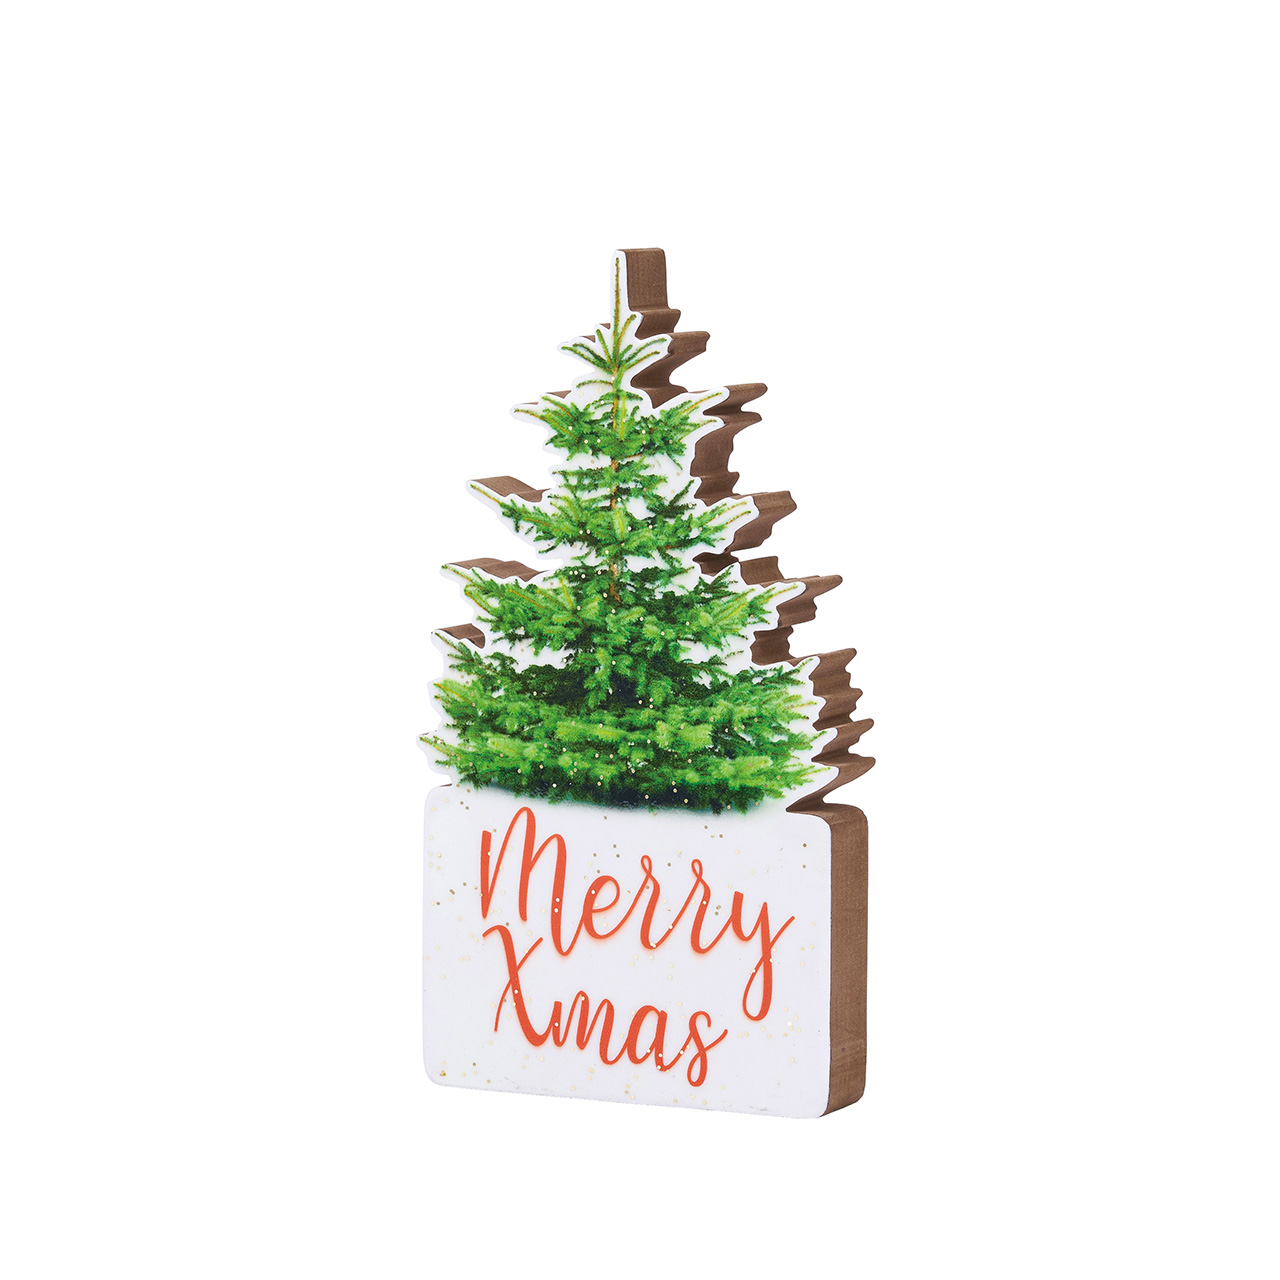 マイフラ 通販 コピアメリークリスマス デコレーション素材 クリスマス 置物 Xu 幅 約14 高さ 約24cm デコレーション素材 全国にmagiq 花器 花資材などをお届けします